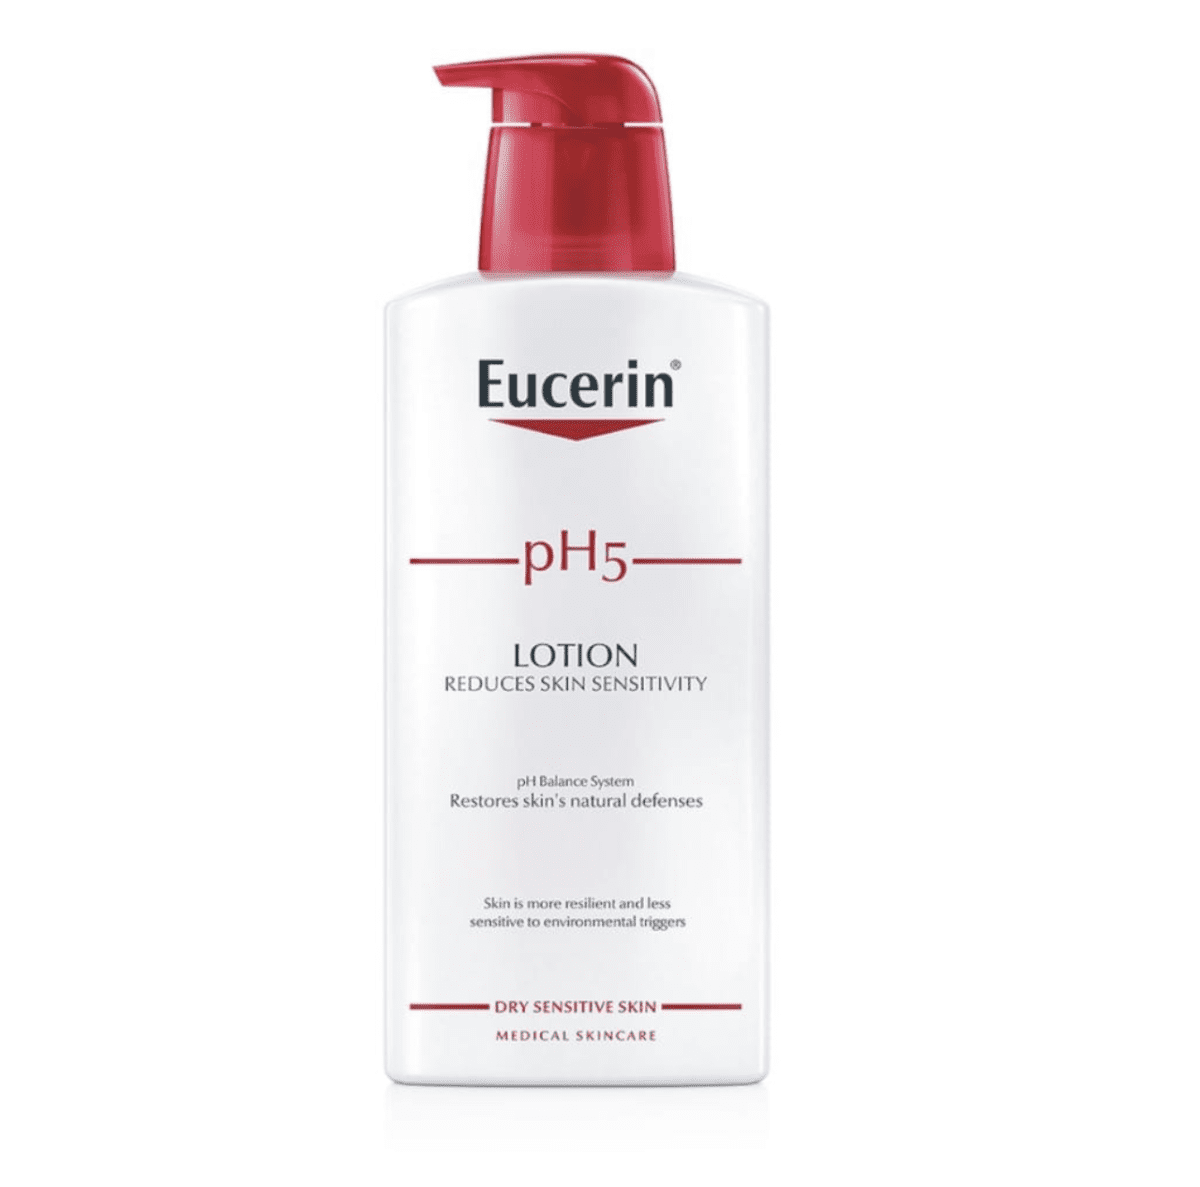 Eucerin PH5 Lotion